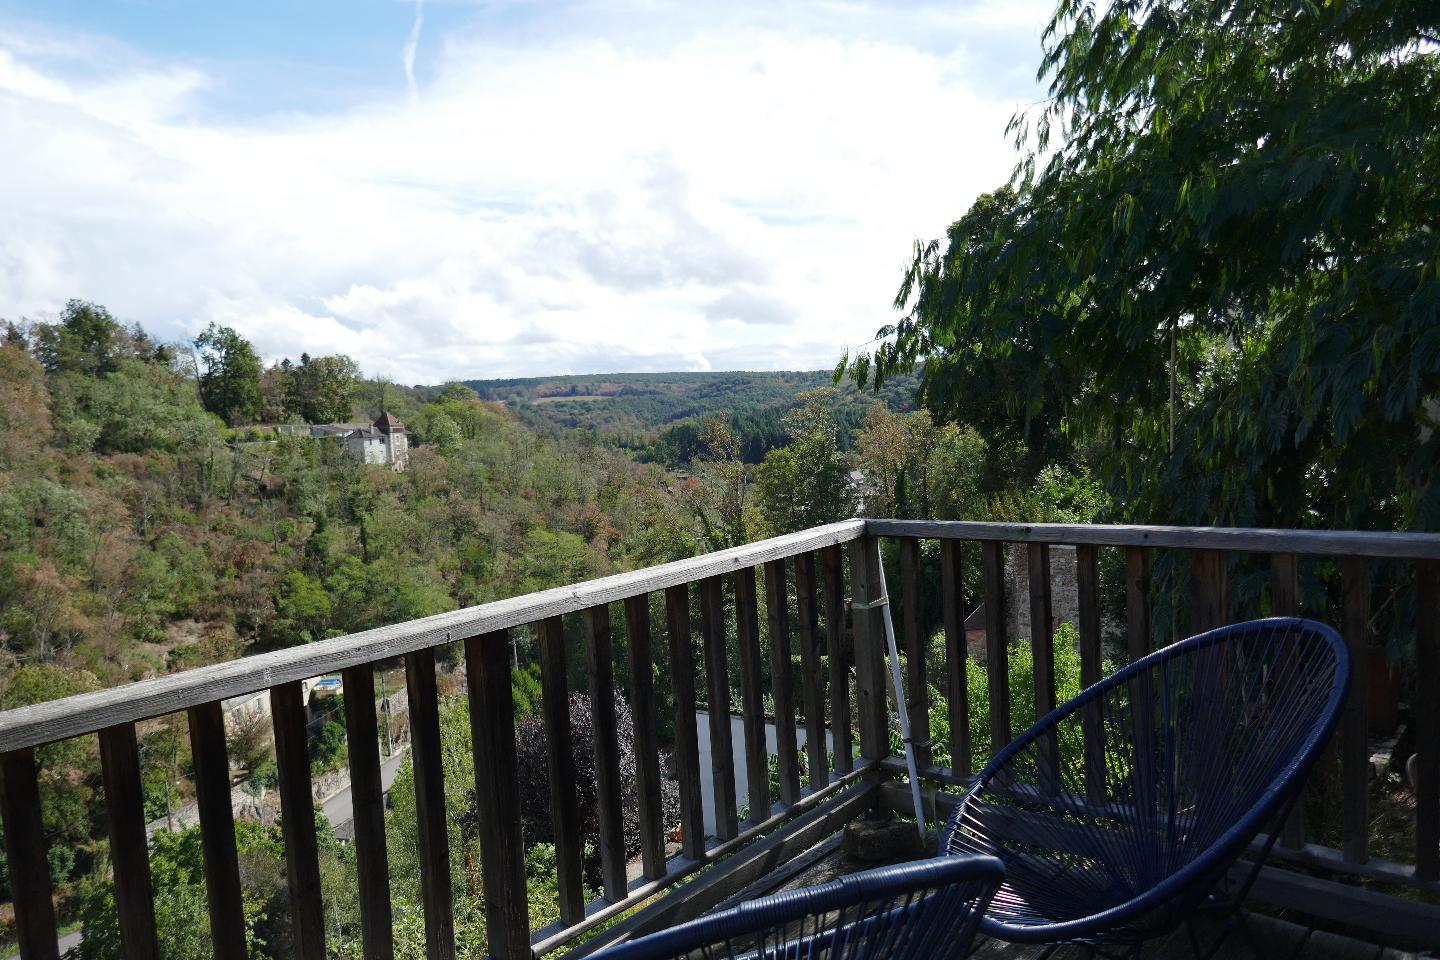 Hôte GreenGo: Sublime vue sur les jardins d'Avallon - Image 15